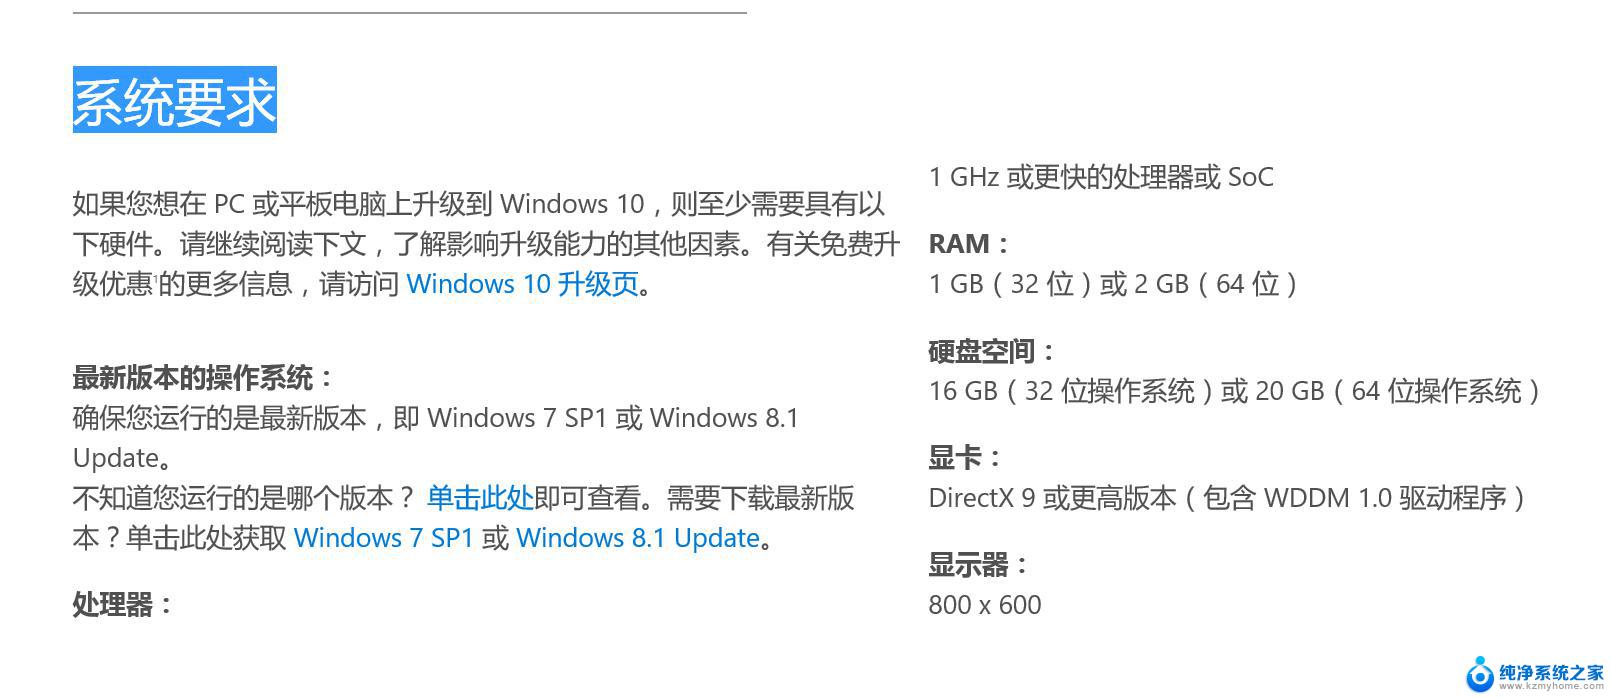 win7最低配置要求有哪些 Windows 7最低配置要求是什么